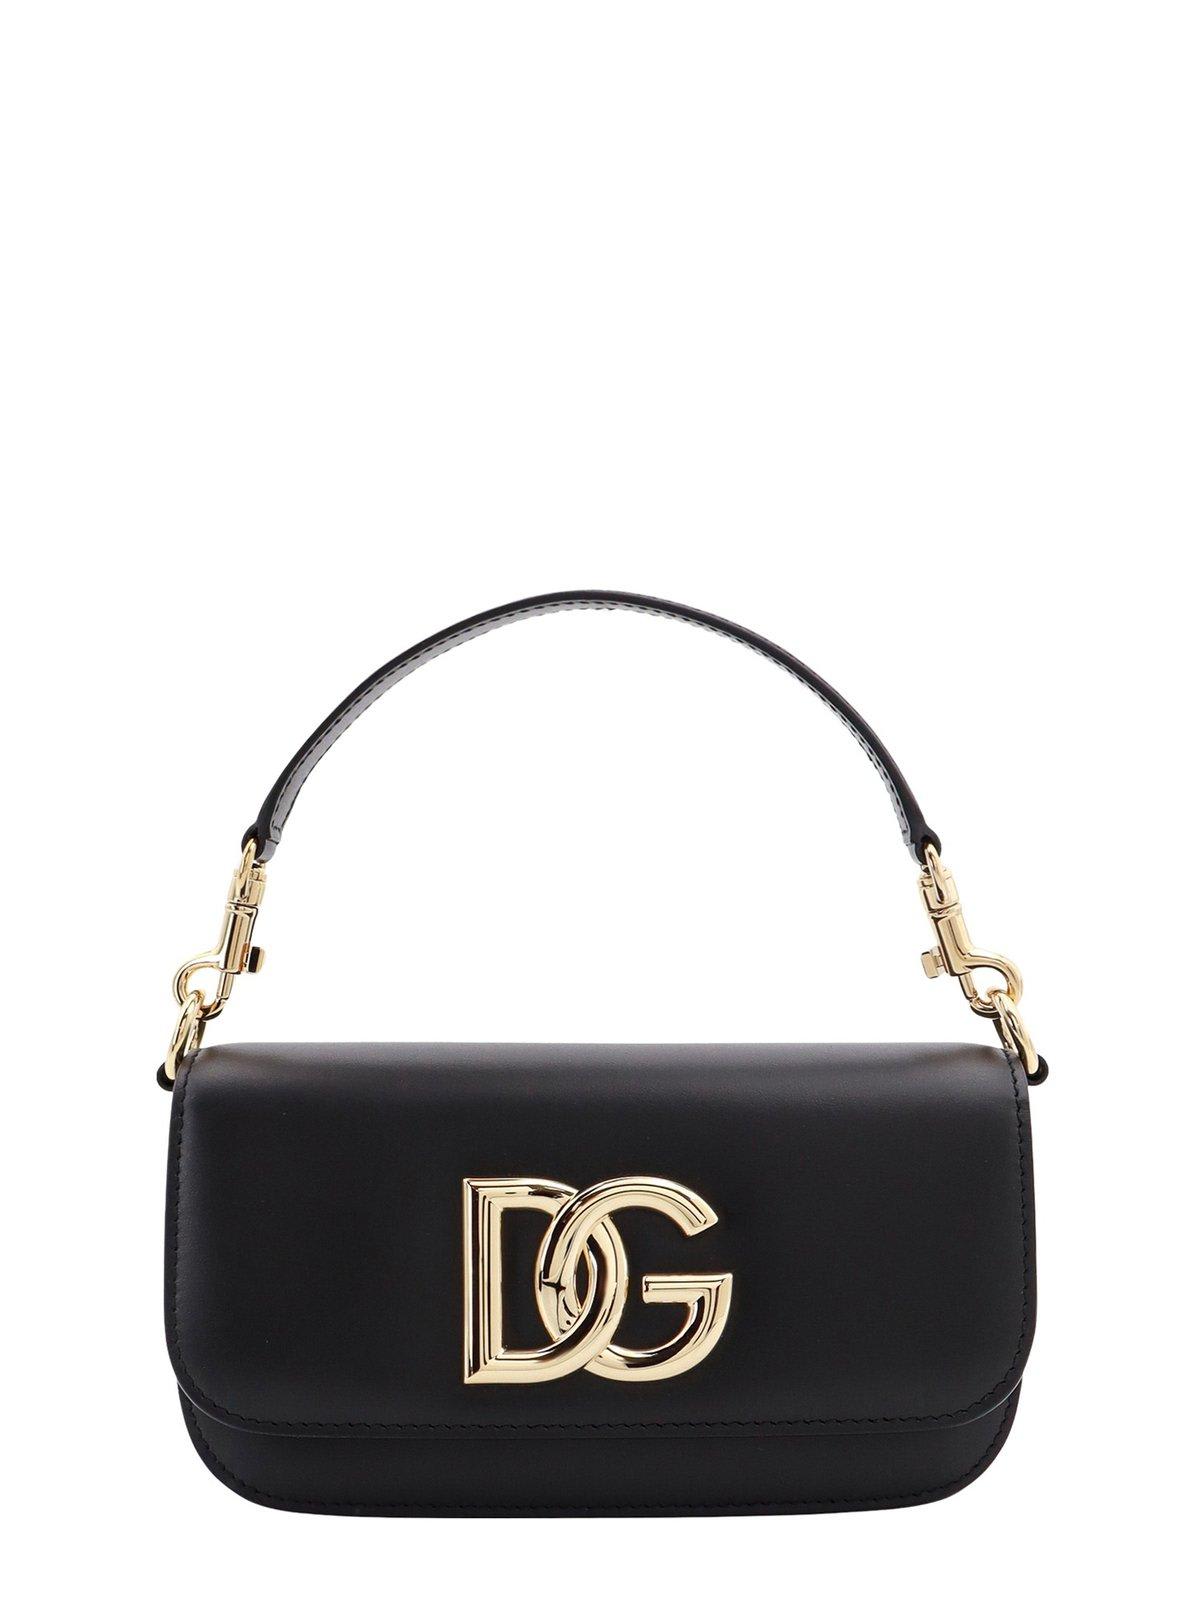 Dolce & Gabbana 3.5 Logo Plaque Small Shoulder Bag In Black